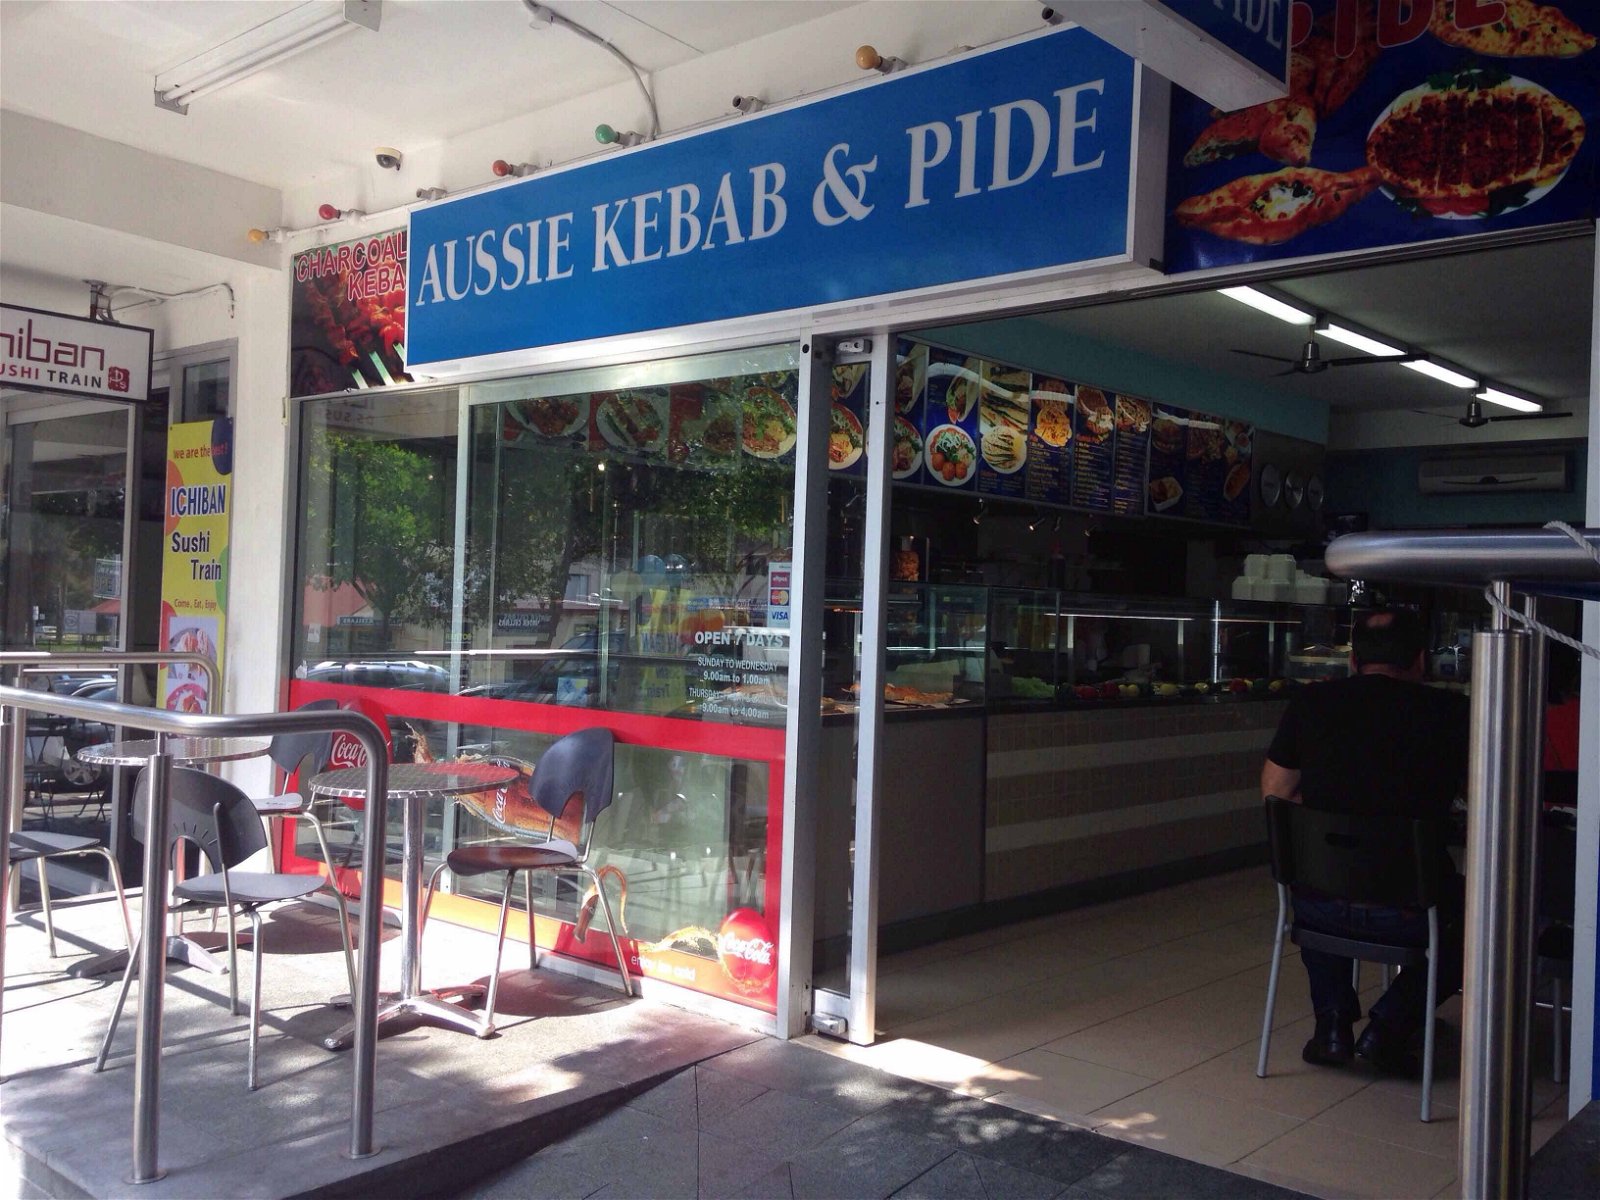 Aussie Kebab  Pide - Food Delivery Shop